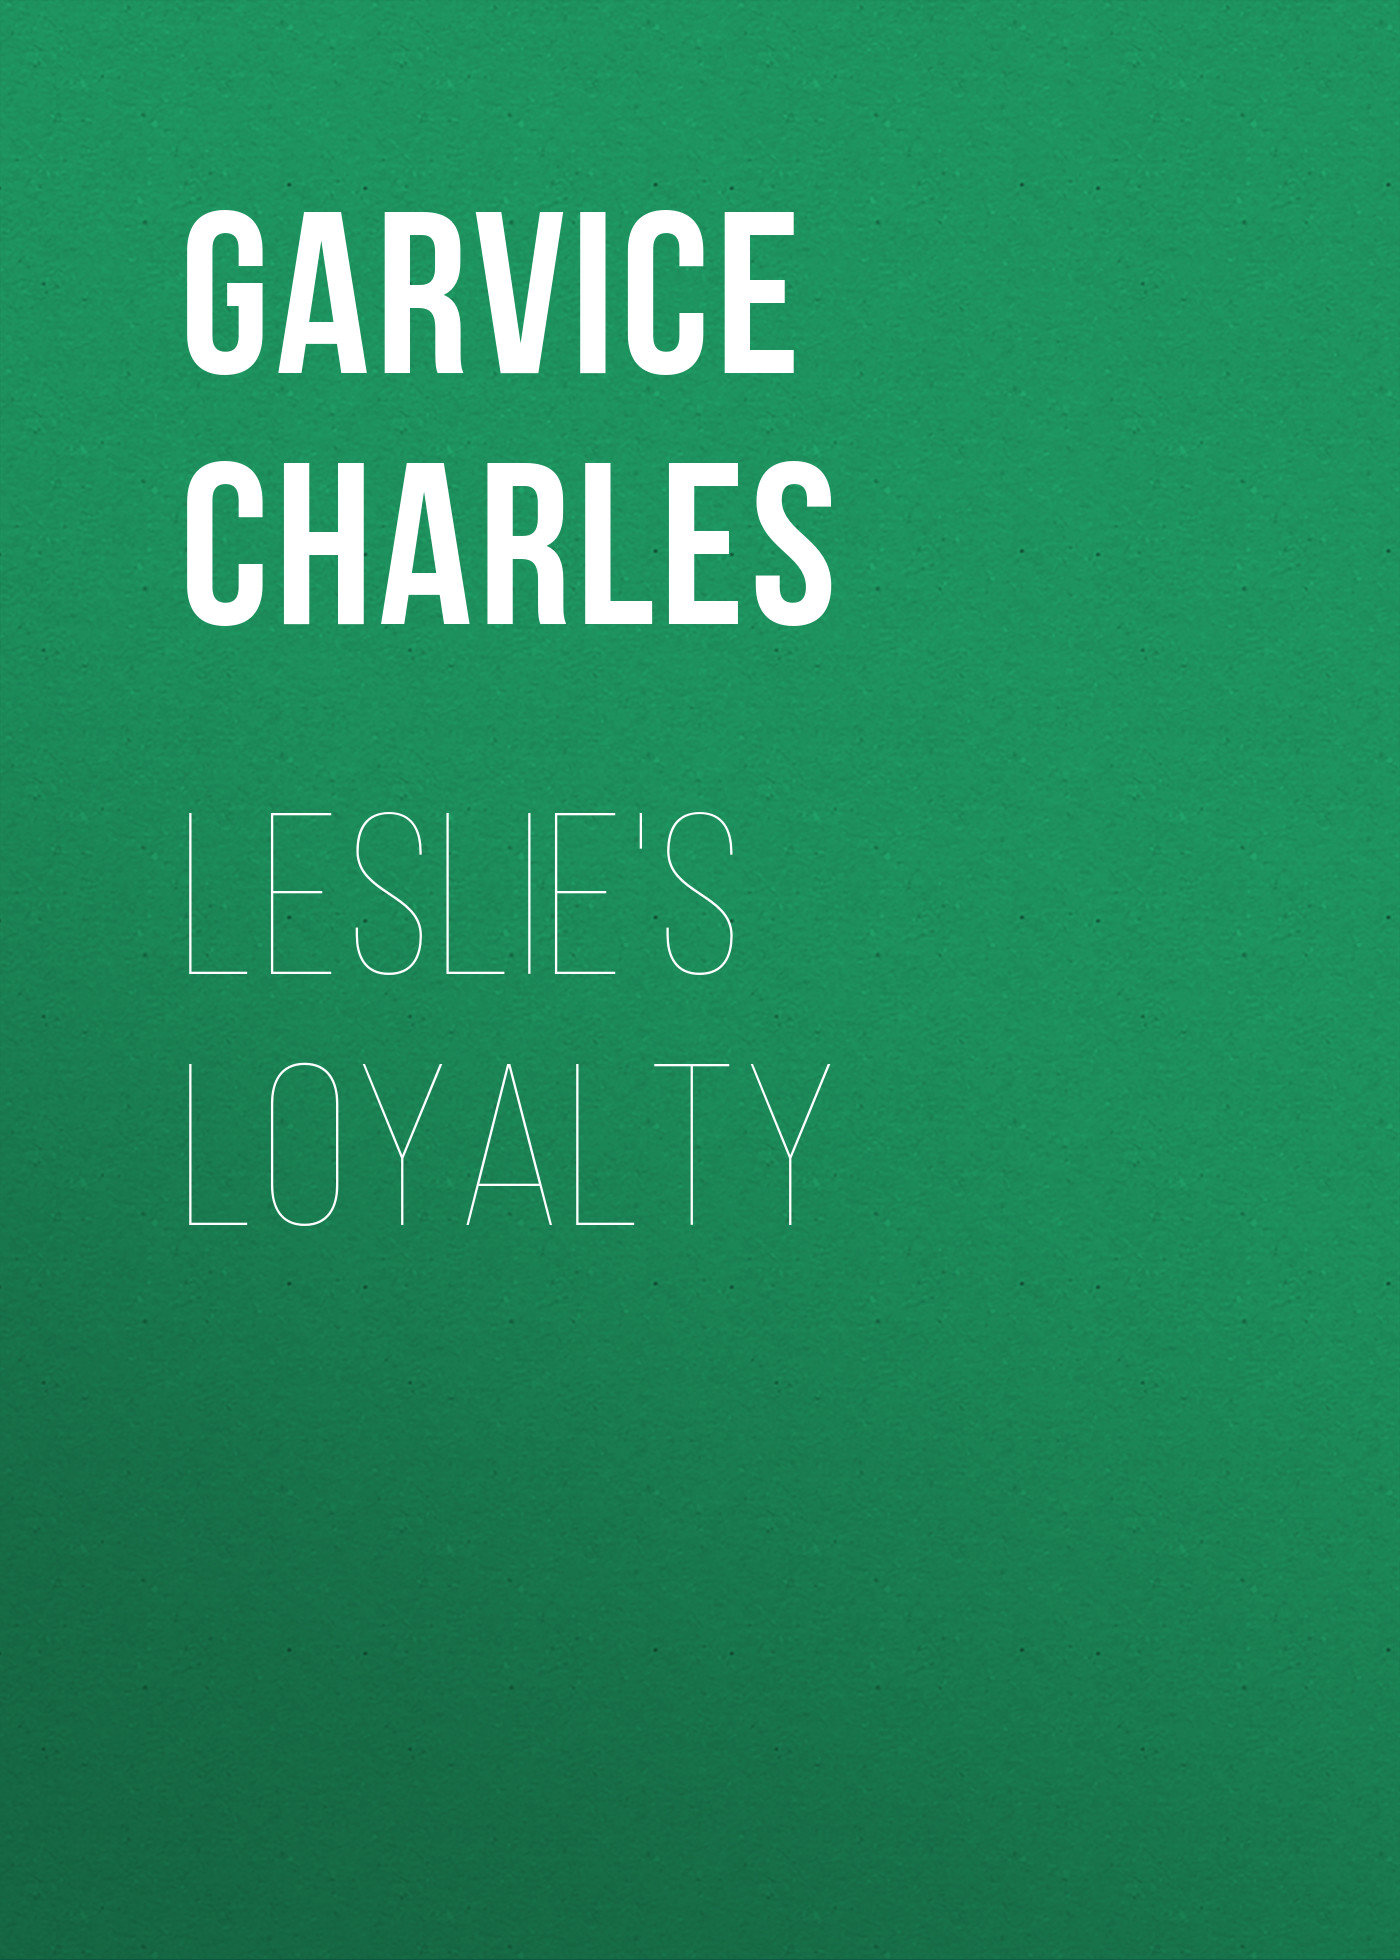 Книга Leslie's Loyalty из серии , созданная Charles Garvice, может относится к жанру Зарубежная старинная литература, Зарубежная классика. Стоимость электронной книги Leslie's Loyalty с идентификатором 24860507 составляет 0 руб.